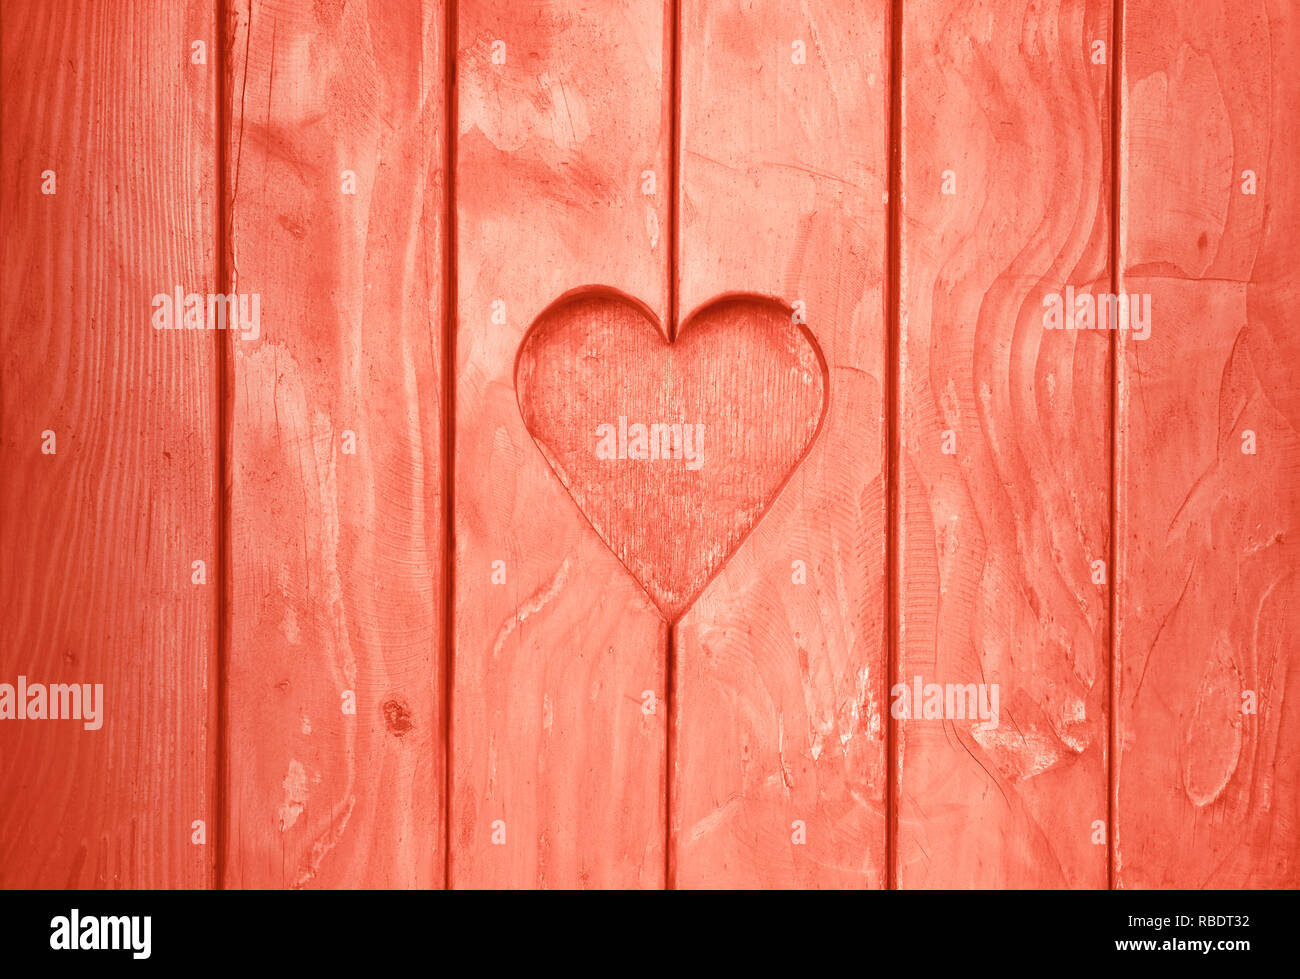 Près d'une forme de coeur, symbole de l'amour et de romance, sculpté en bois coupé en planches en bois texture background rose corail, volets peints Banque D'Images